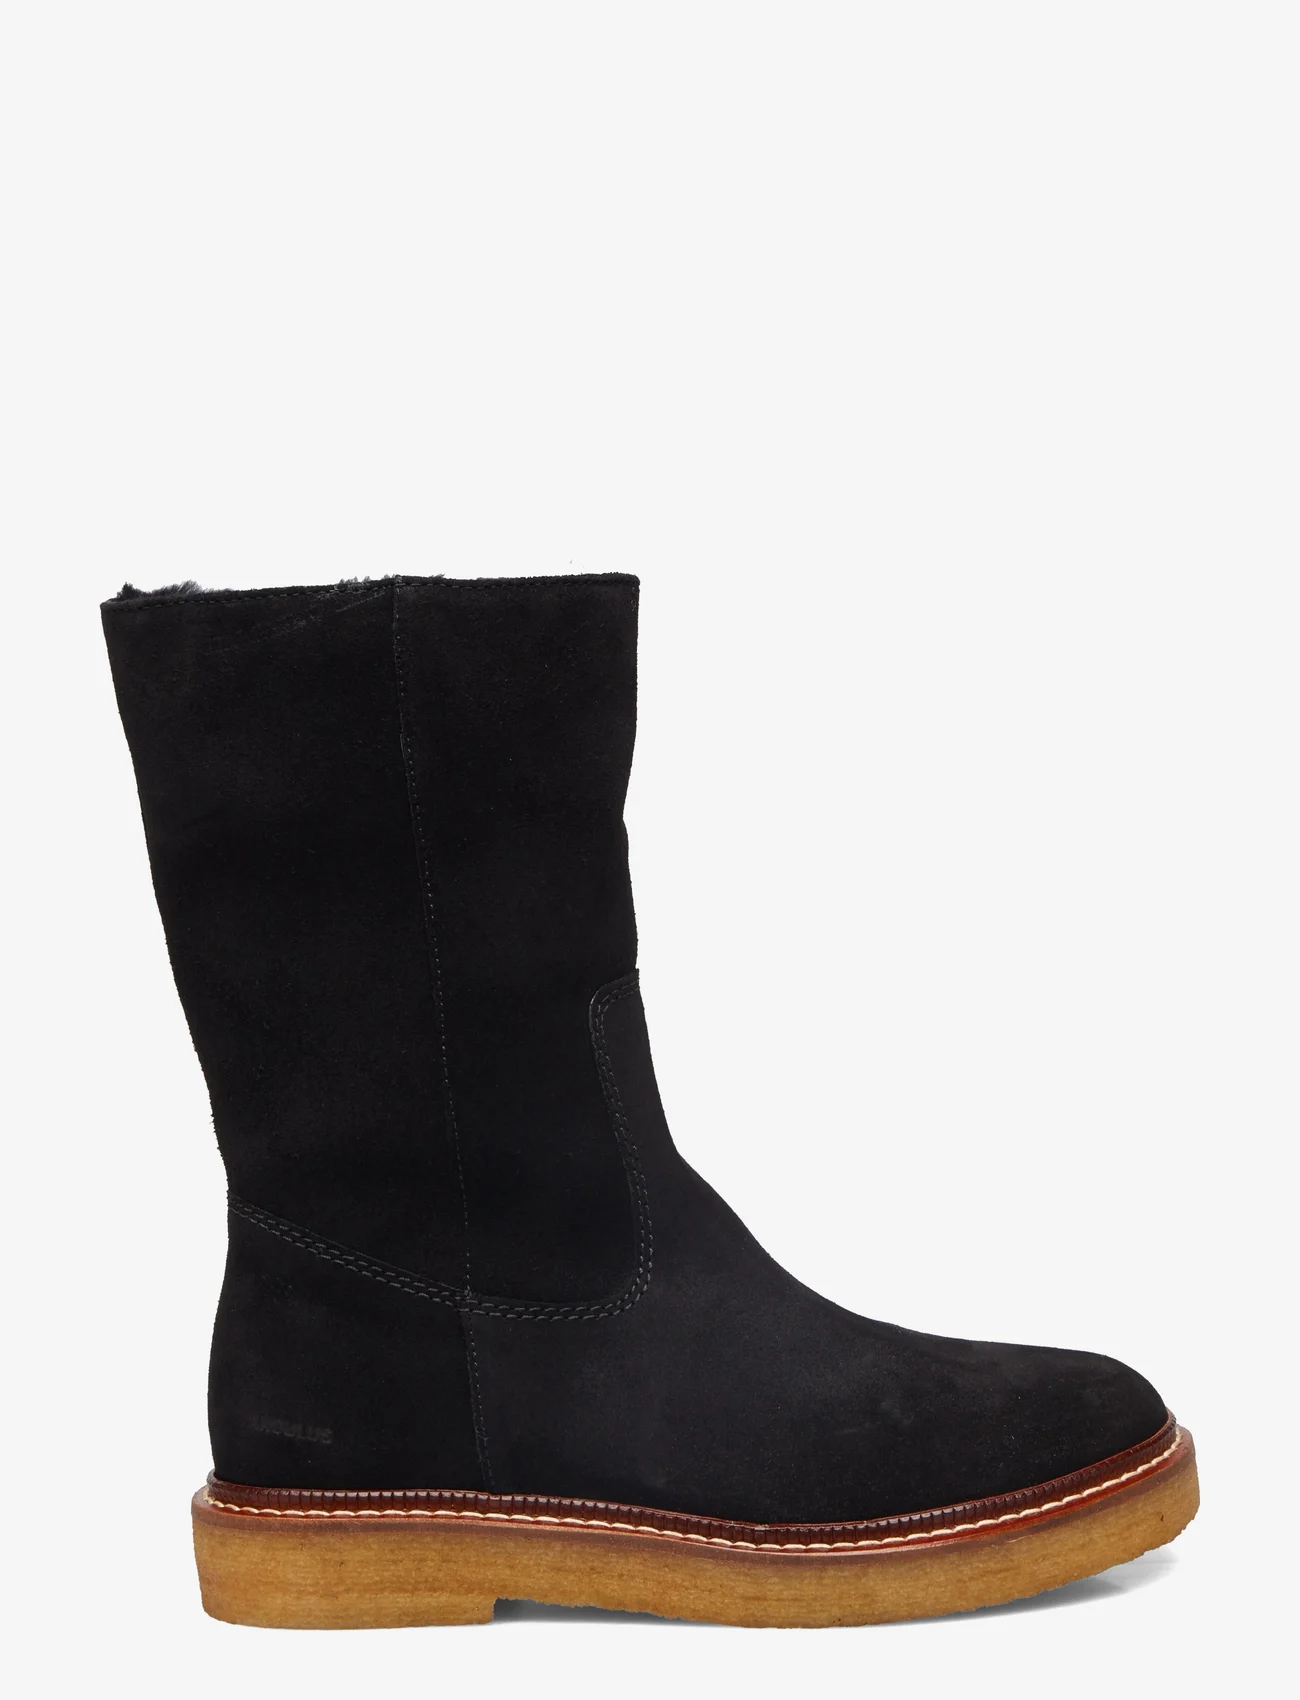 ANGULUS - Boots - flat - lygiapadžiai aulinukai iki kulkšnių - 1163/2014 black/black lamb woo - 1